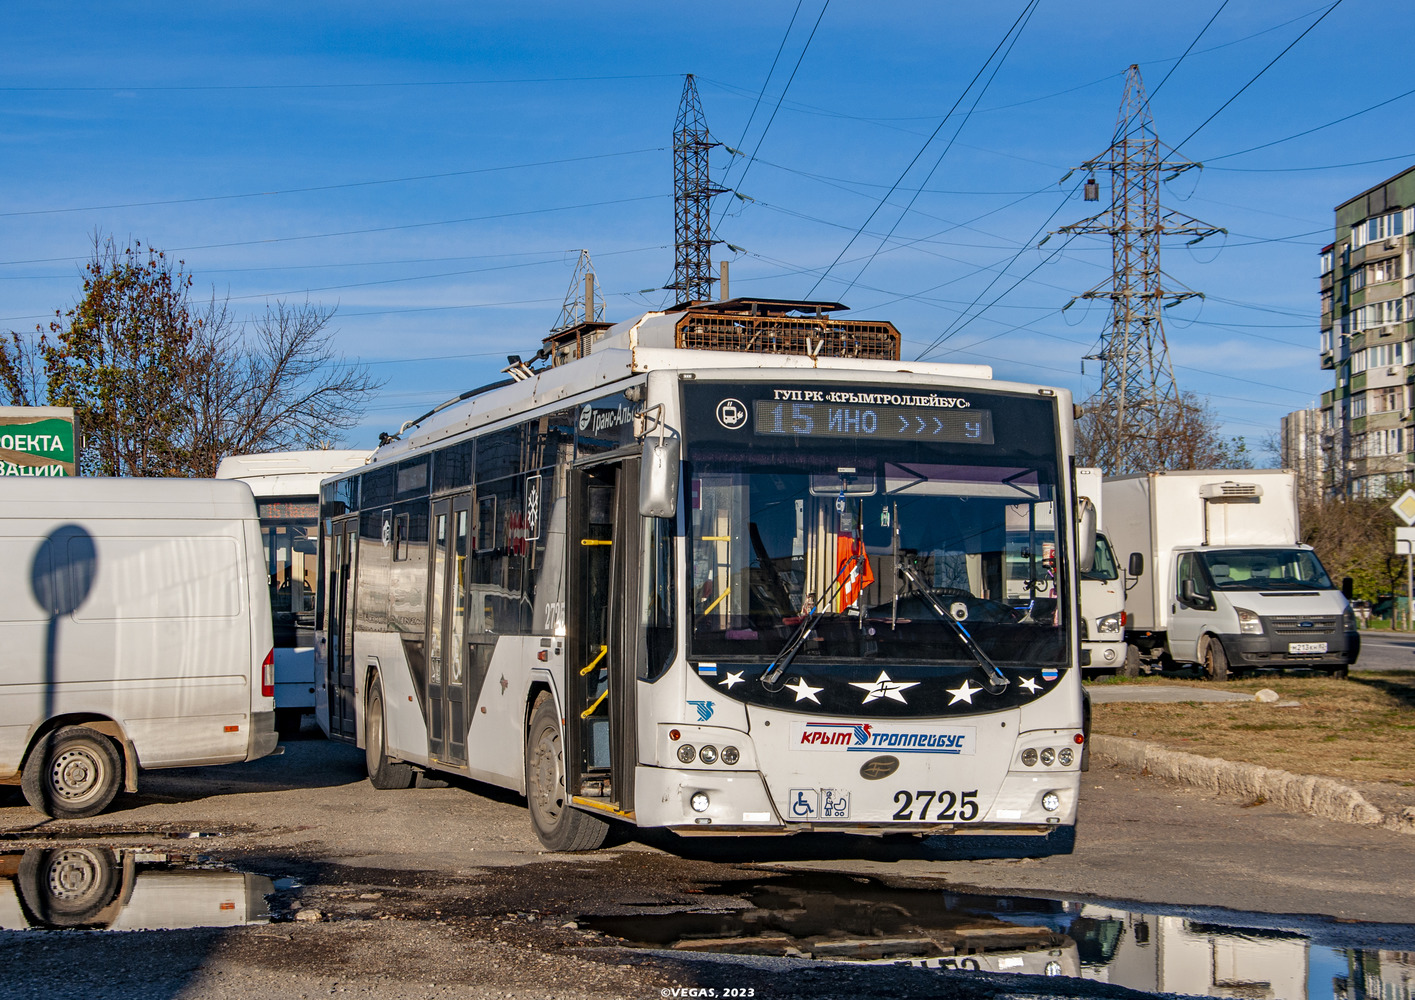 Кримски тролейбус, ВМЗ-5298.01 «Авангард» № 2725; Кримски тролейбус — Движение троллейбусов без КС (автономный ход).